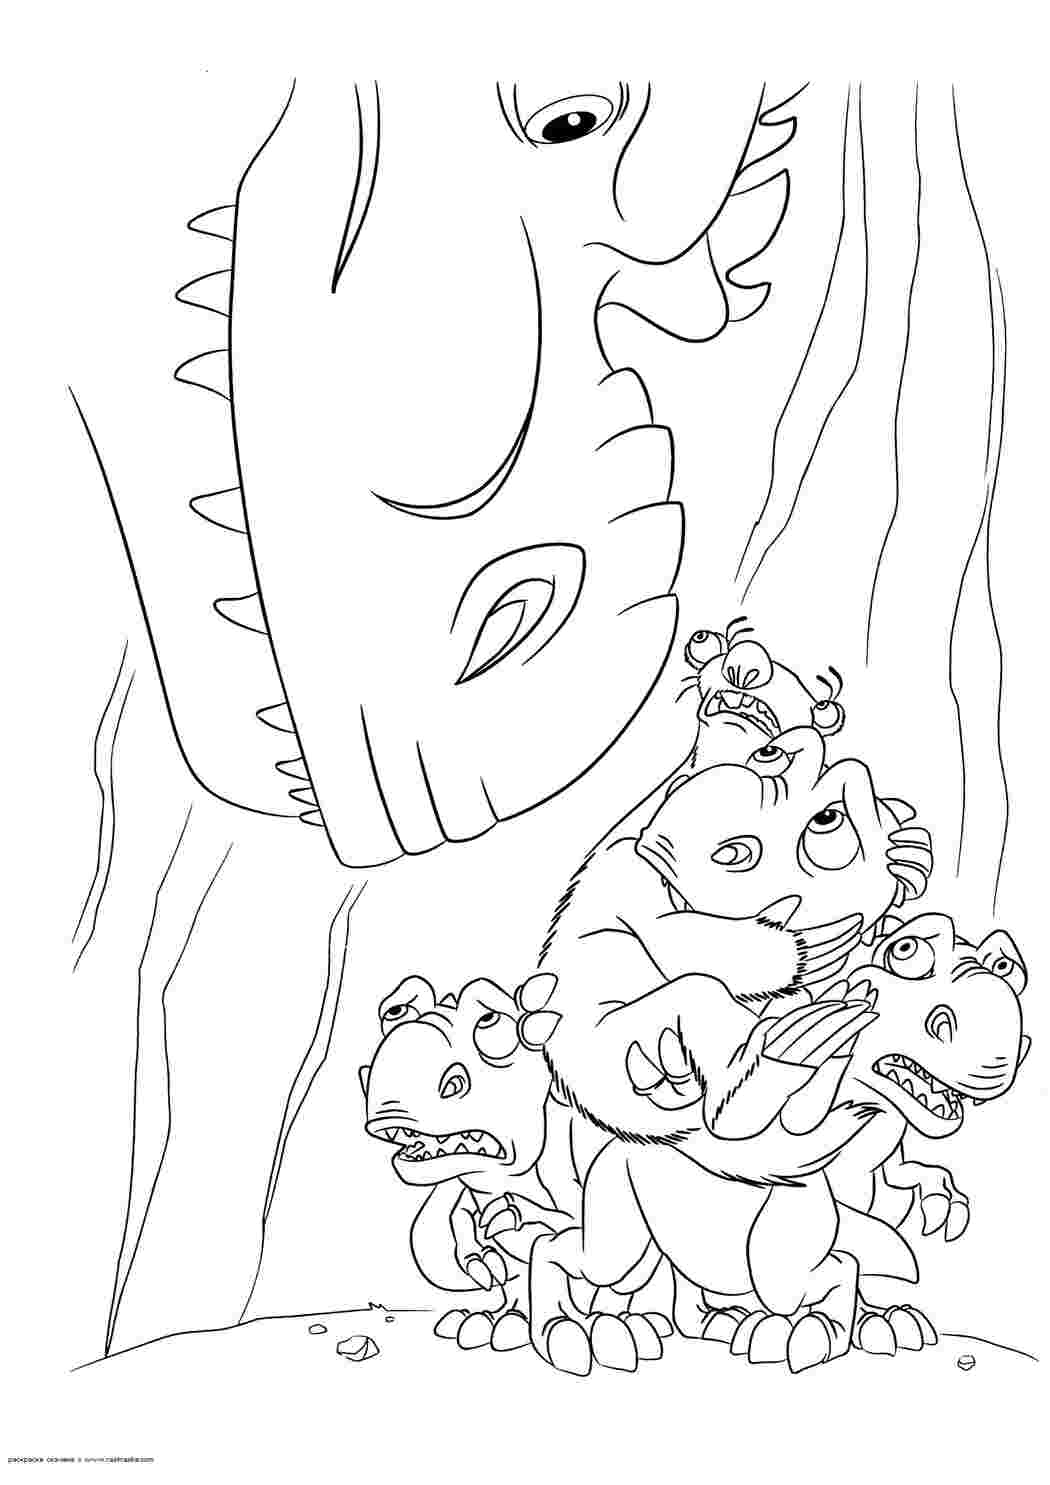 Раскраски Раскраска Динозаврики и Сид. Раскраска Раскраска Ледниковый период 3 : Эра динозавров, картинки из мультфильма для раскрашивания, динозавр и ленивец динозавр динозавр